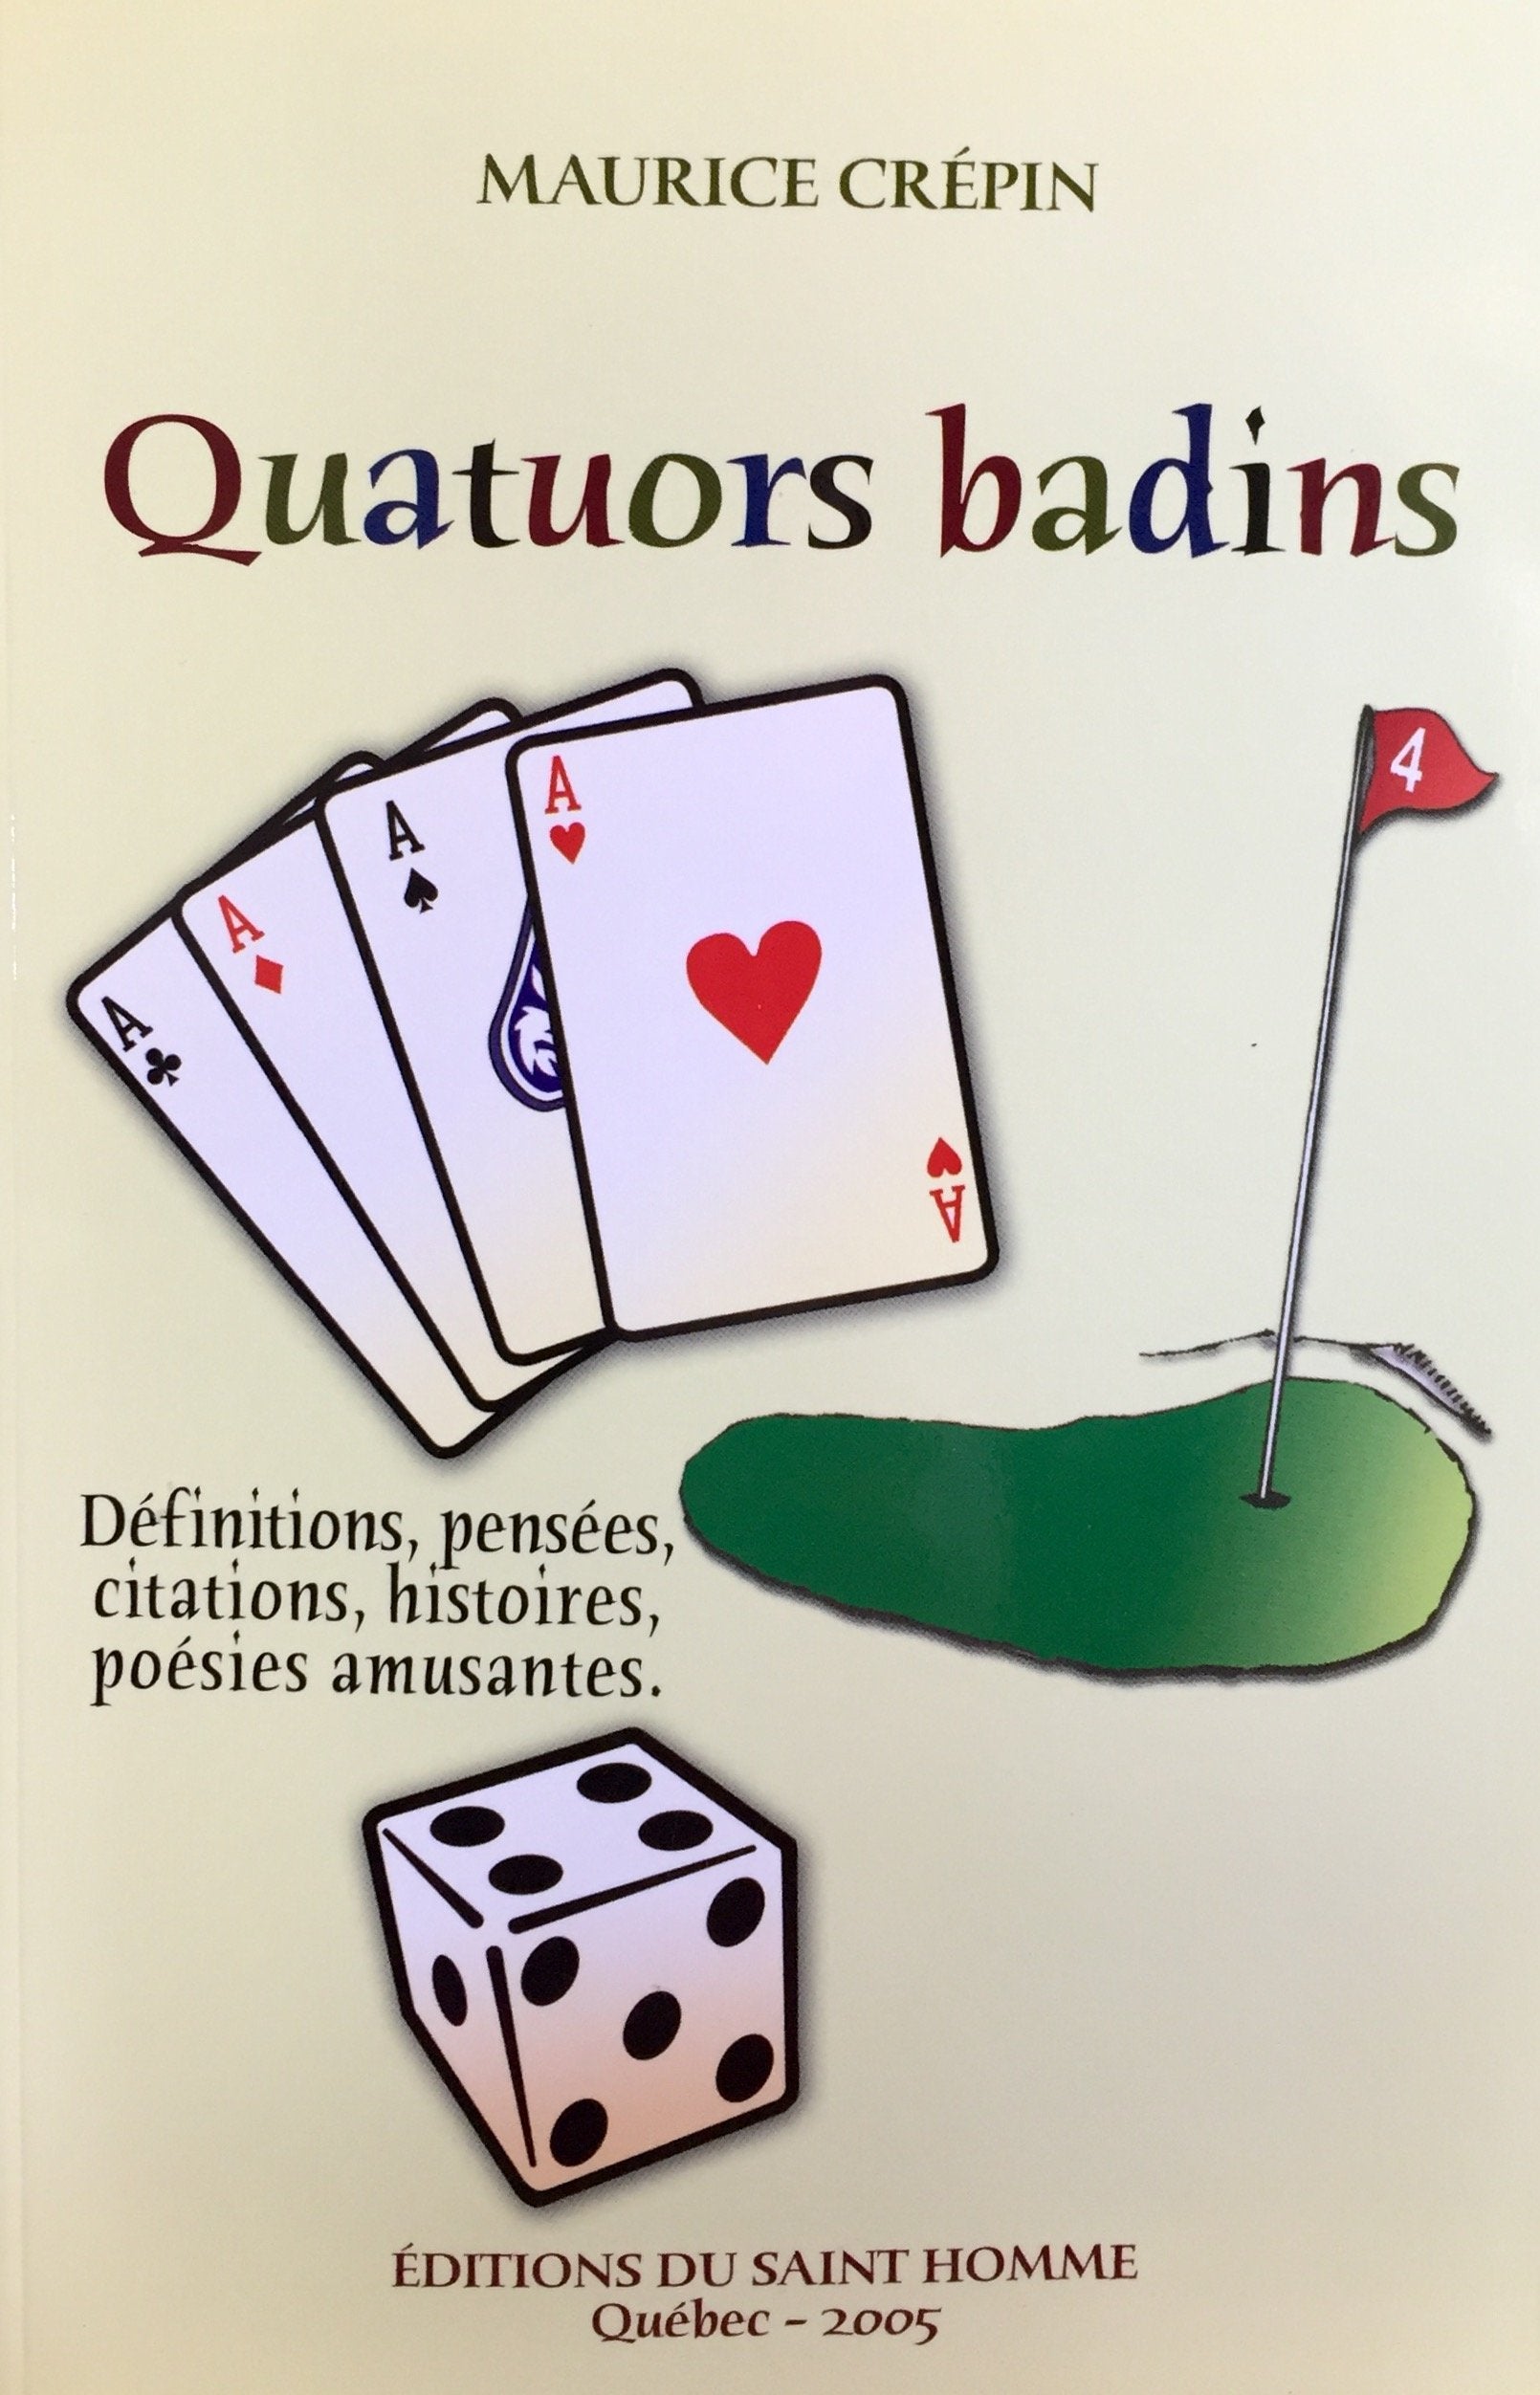 Livre ISBN 2980342734 Quatuors badins : définitions, pensées, citations, histoires, poésies amusantes (Maurice Crépin)